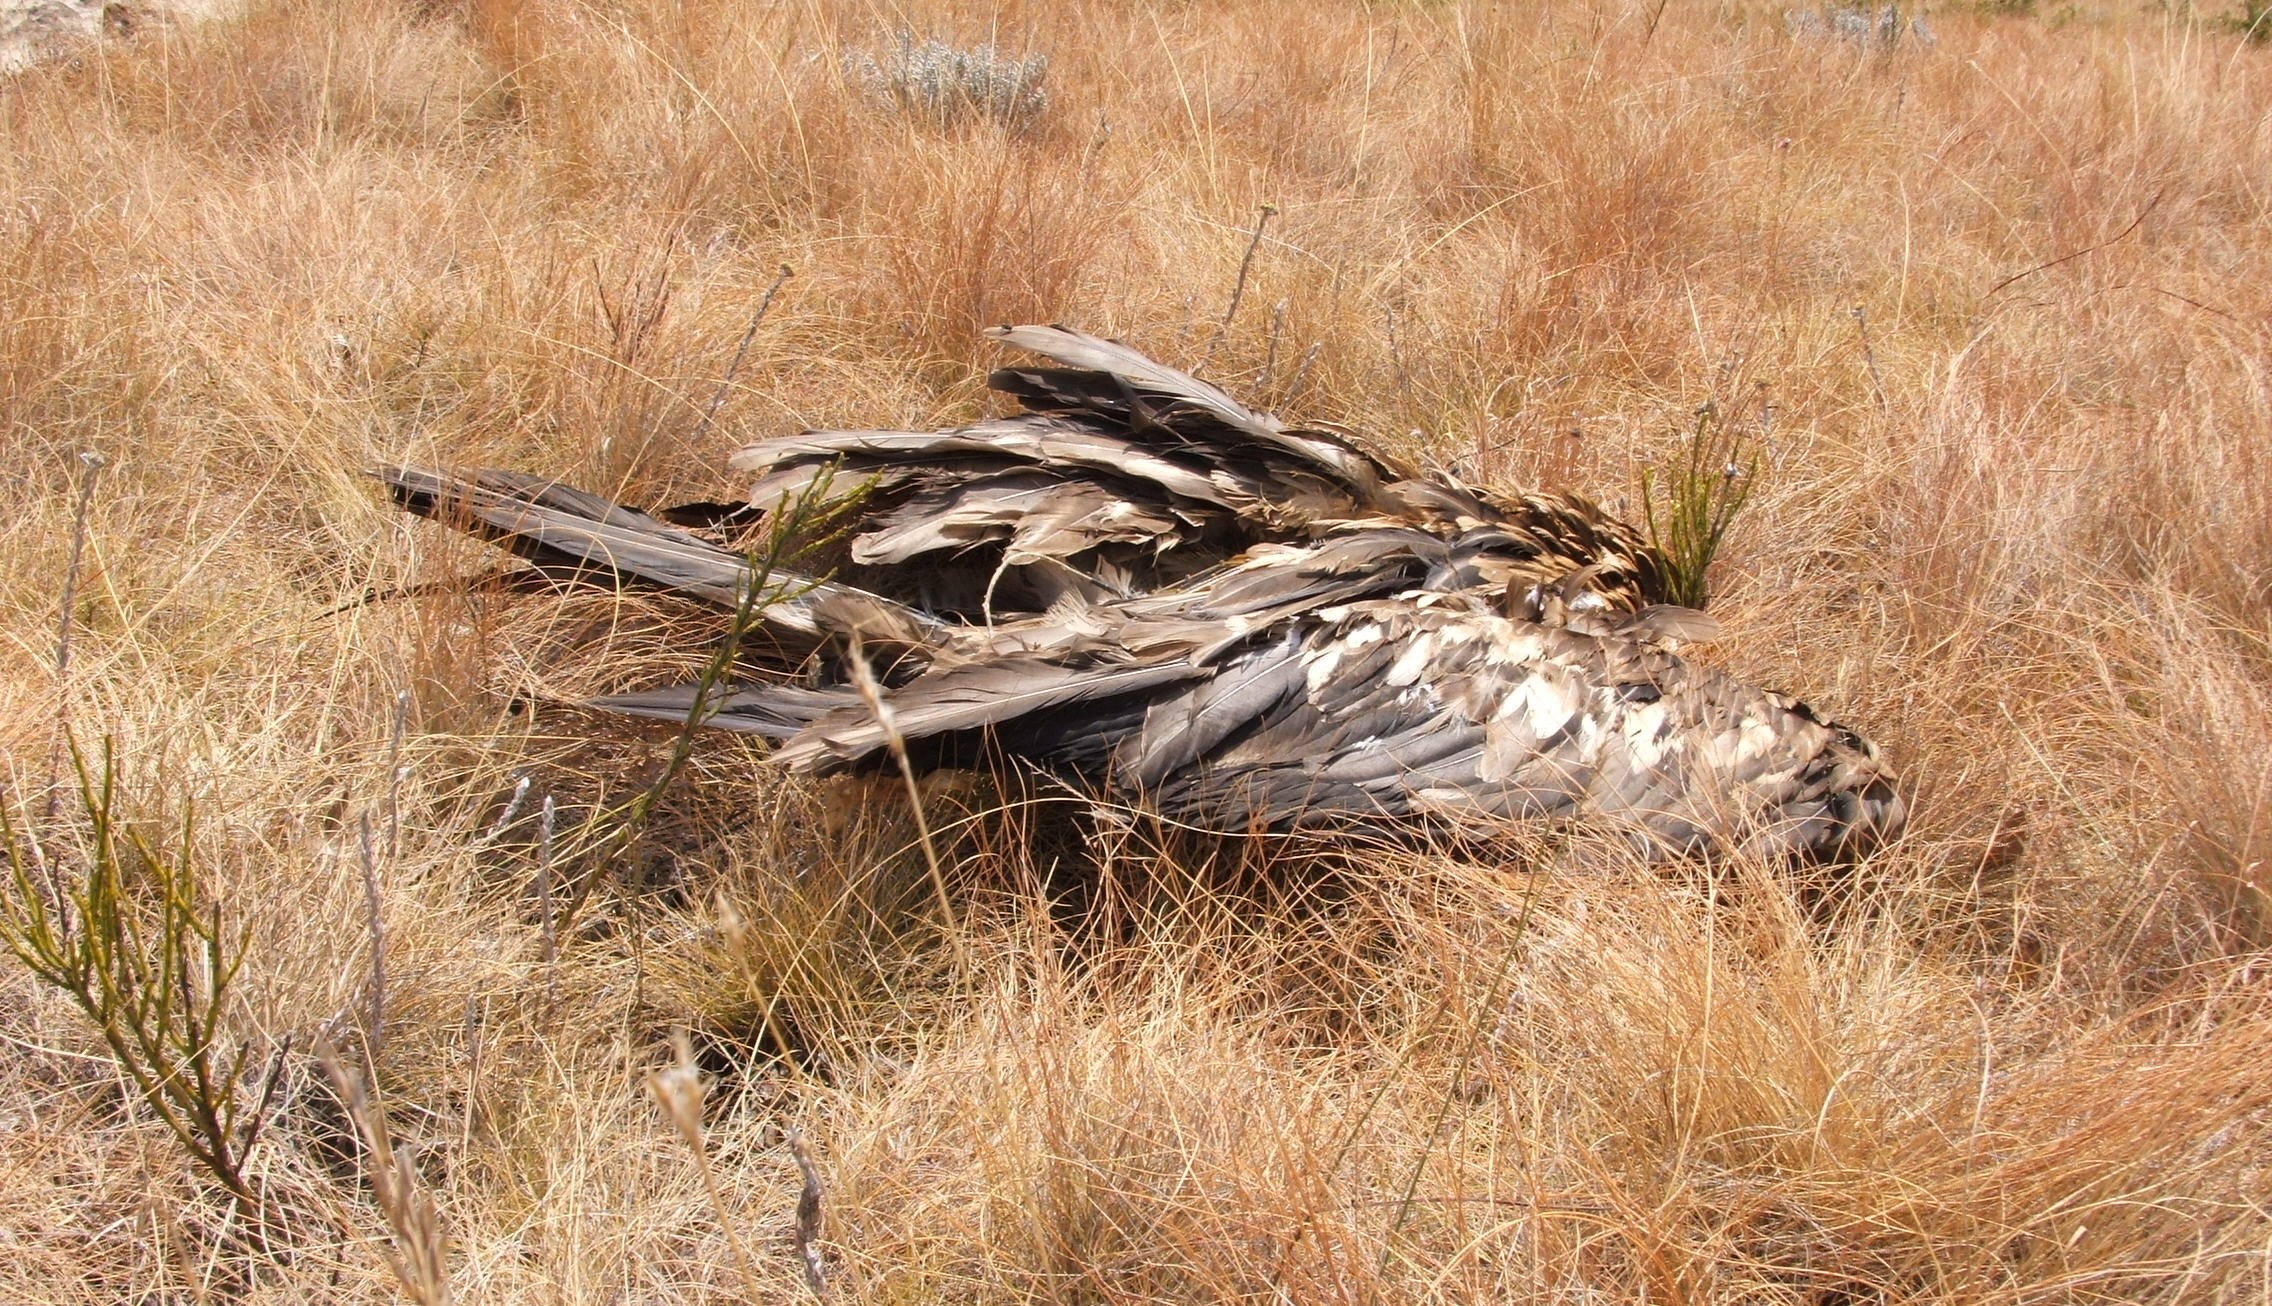 Dead juvenile Bearded Vulture